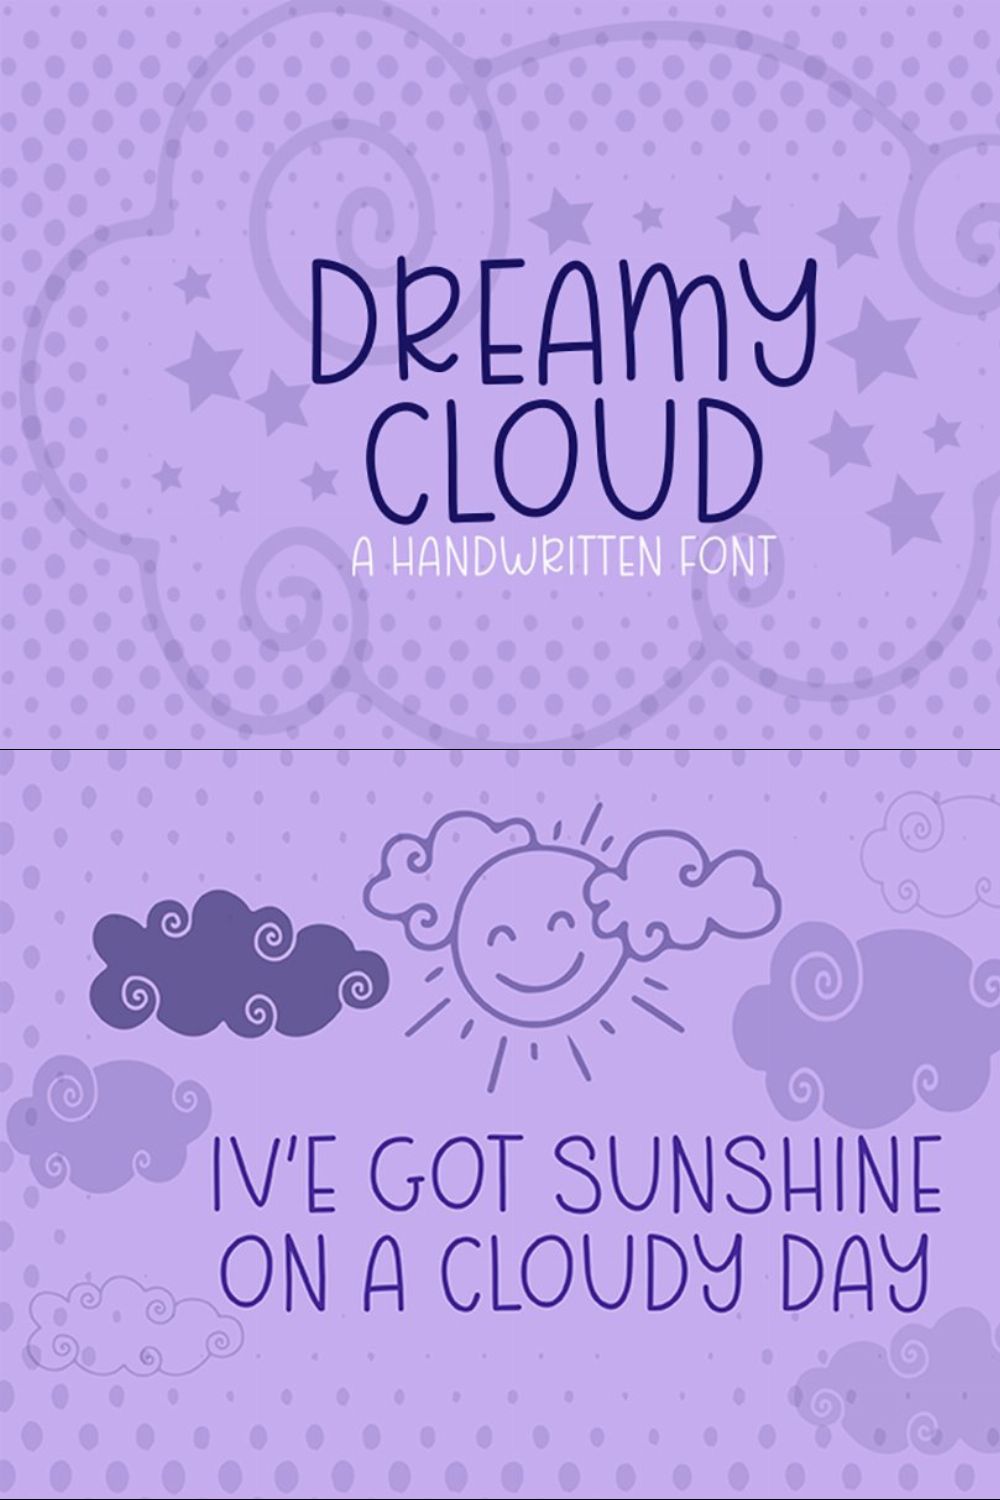 Dreamy Cloud pinterest preview image.